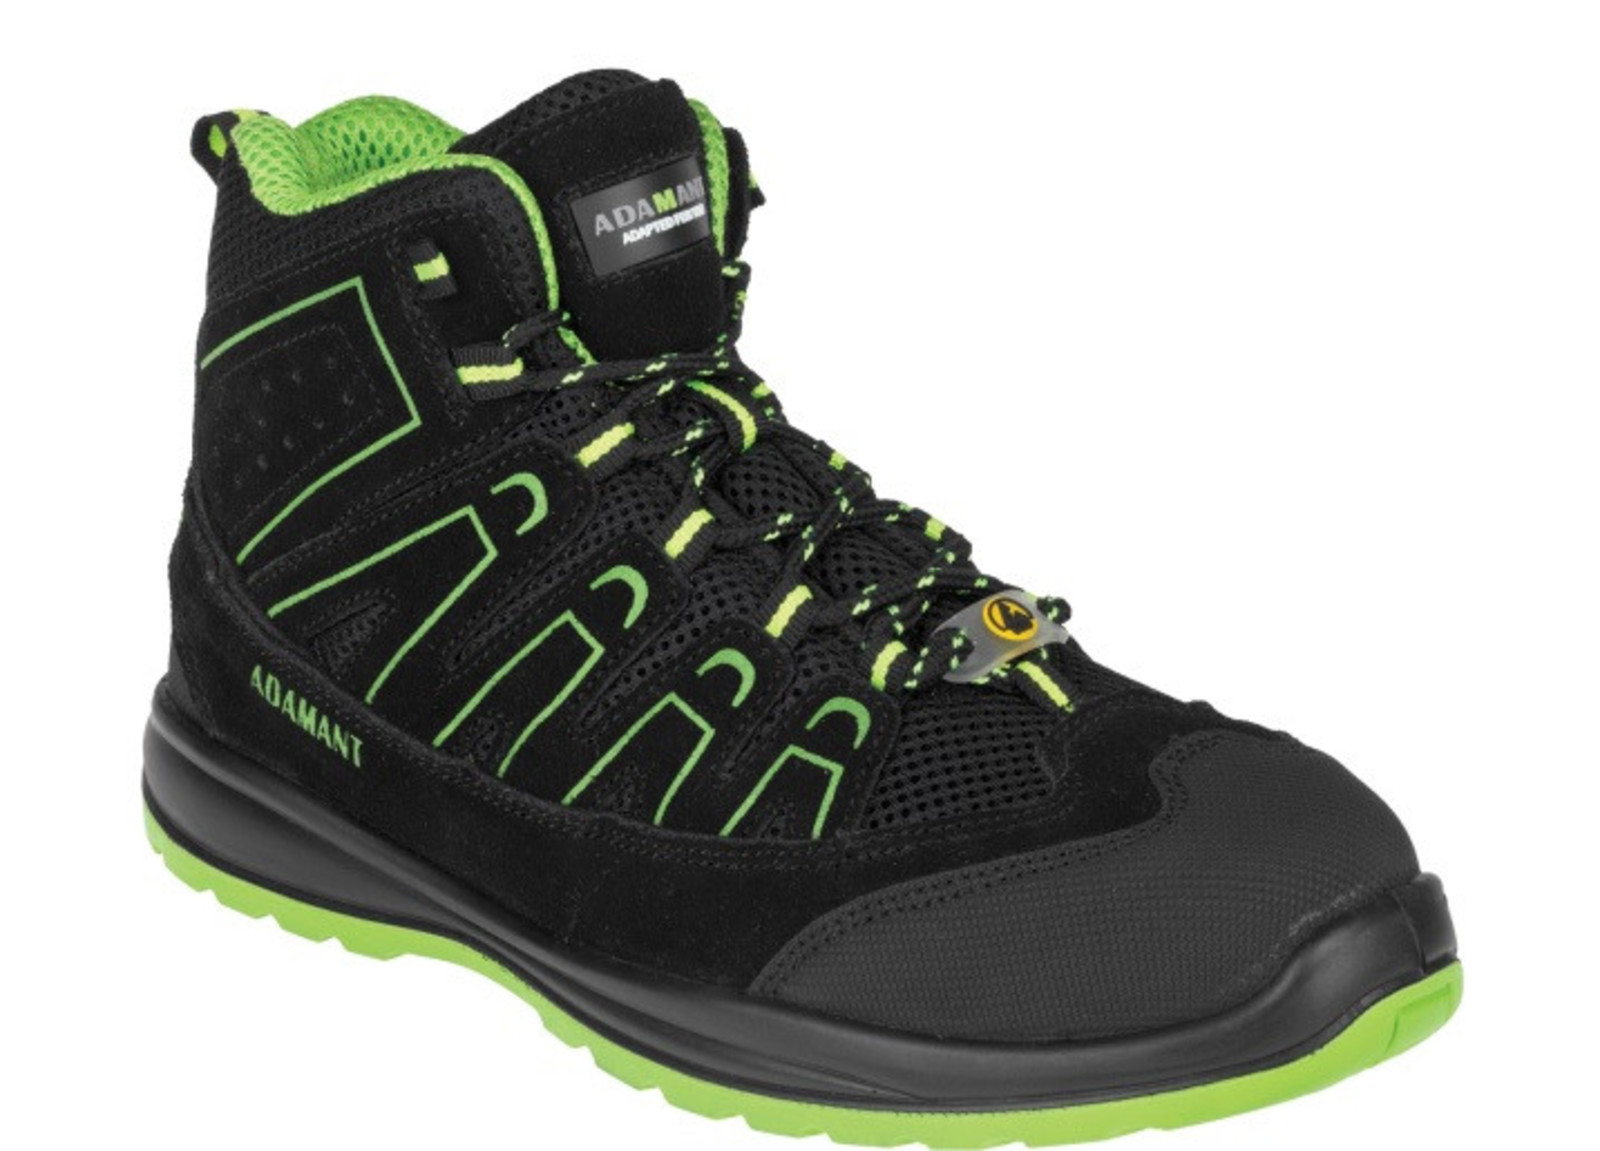 Bezpečnostná obuv Adamant Alegro S1P ESD - veľkosť: 42, farba: čierna/zelená